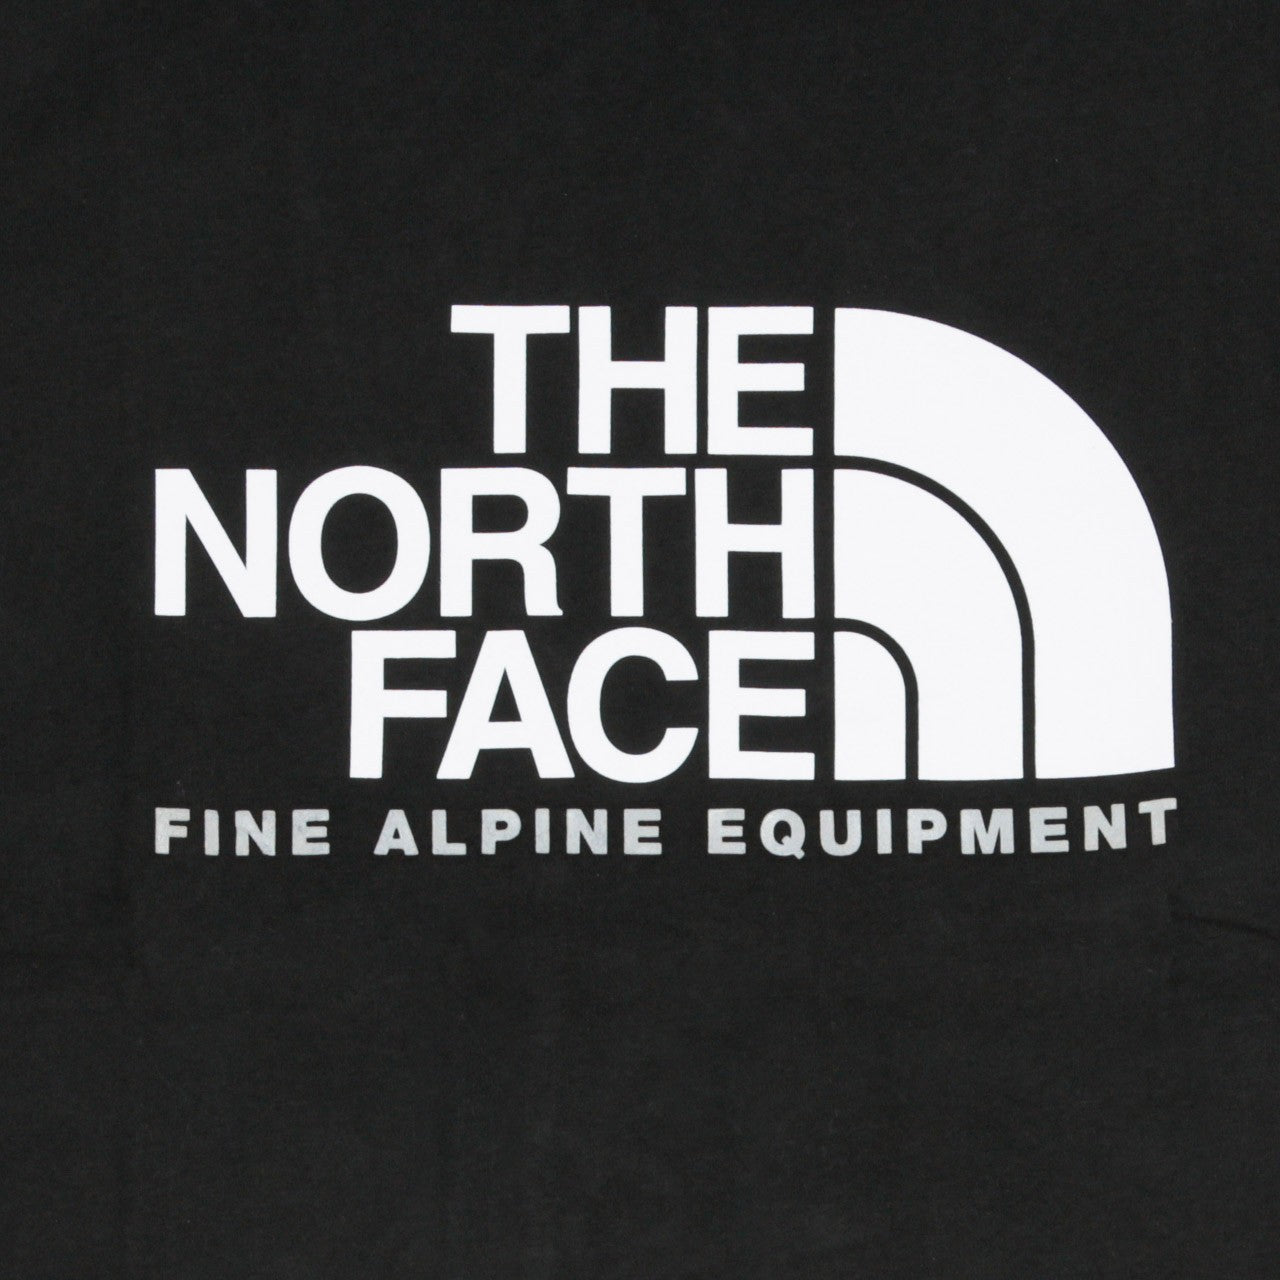 The North Face, Maglietta Uomo Fine Alp Tee 2, 